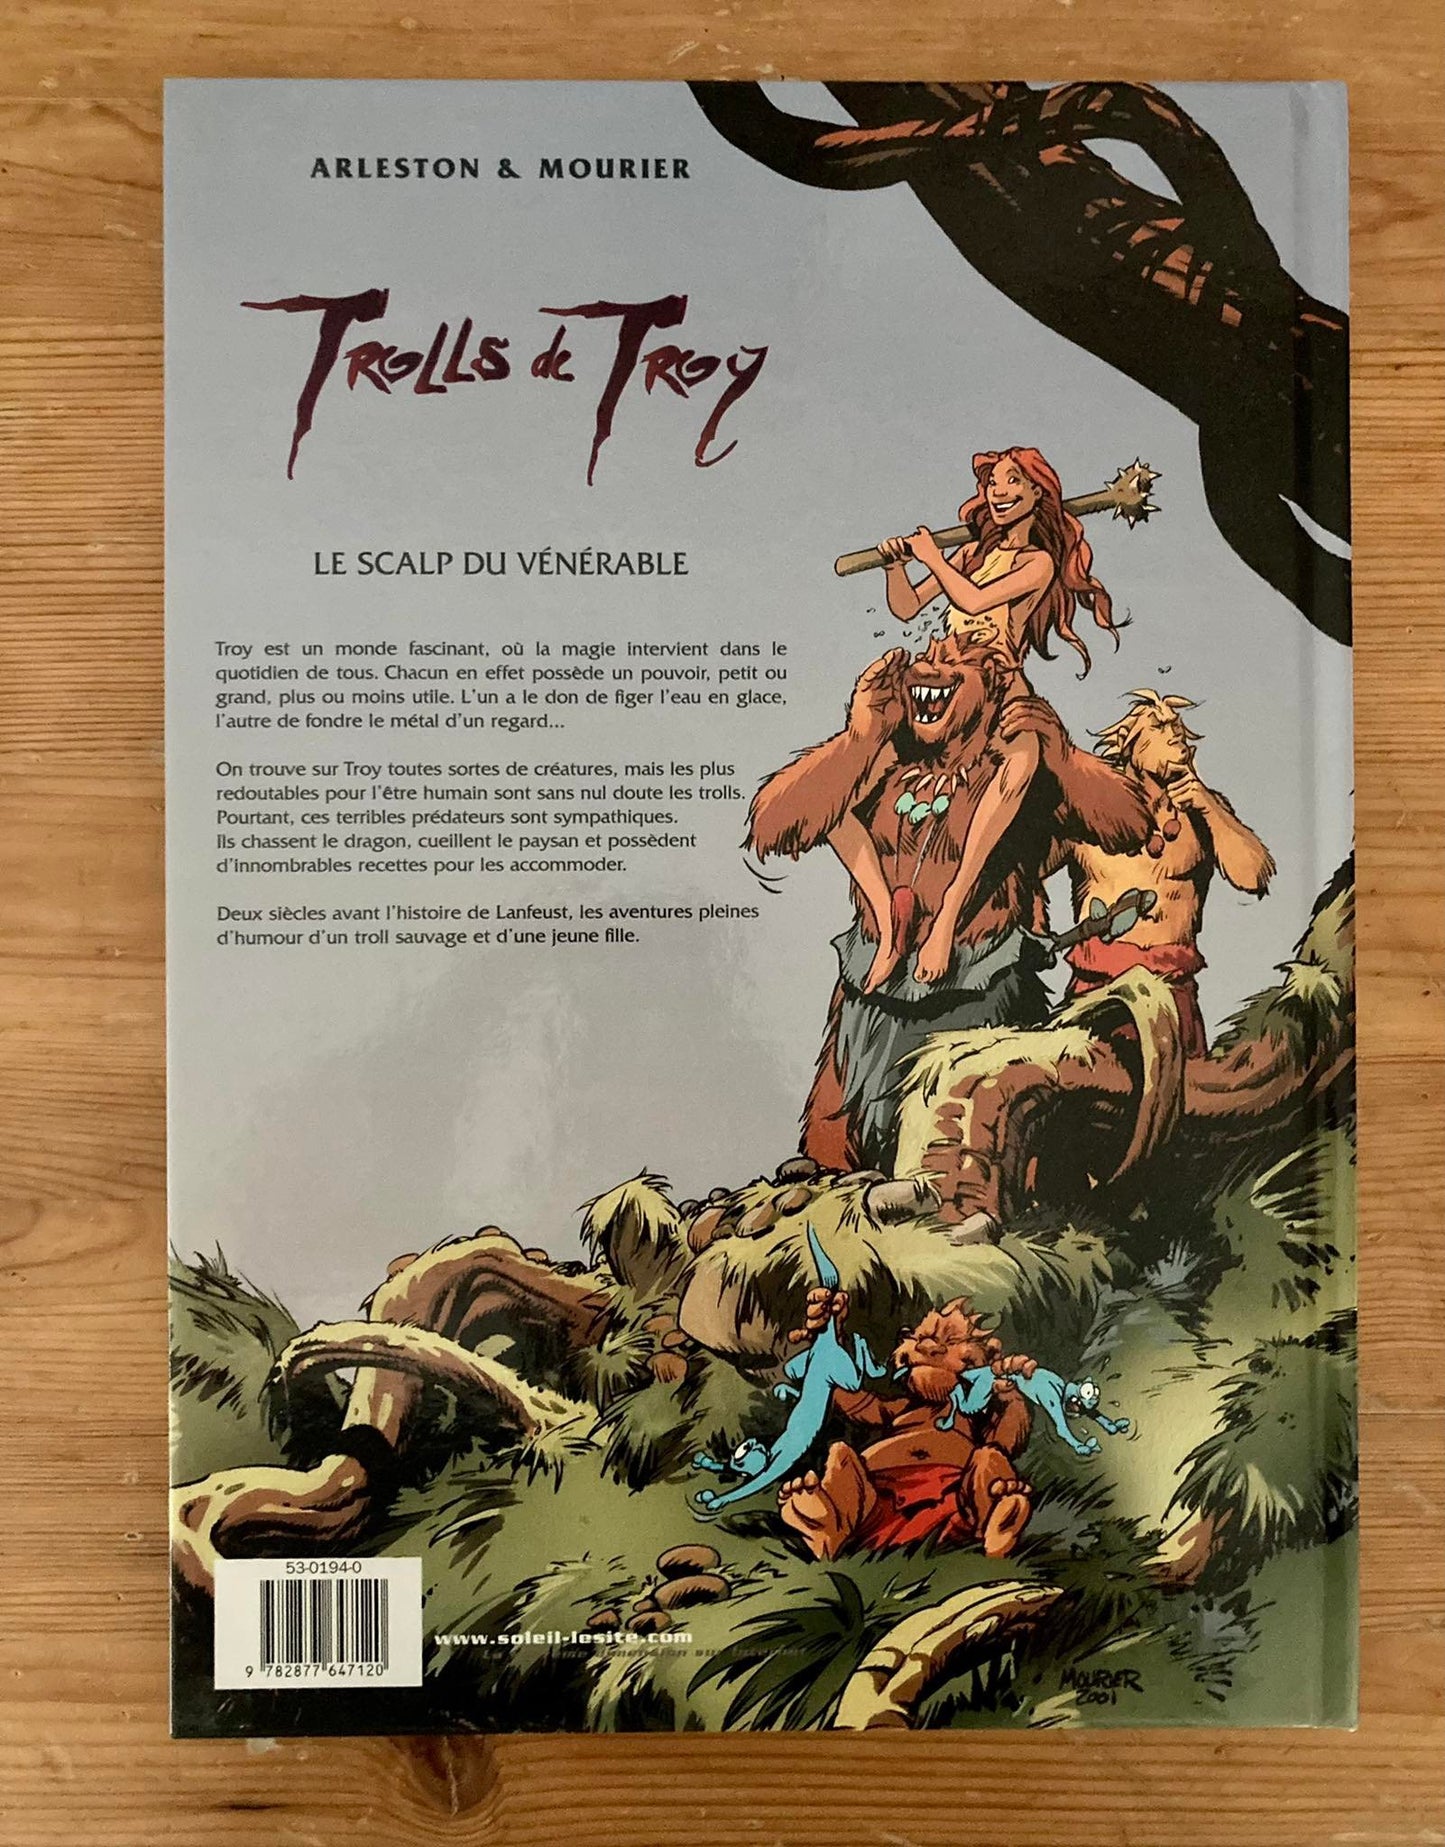 Trolls of Troy Volume 2 - The Venerable's Scalp